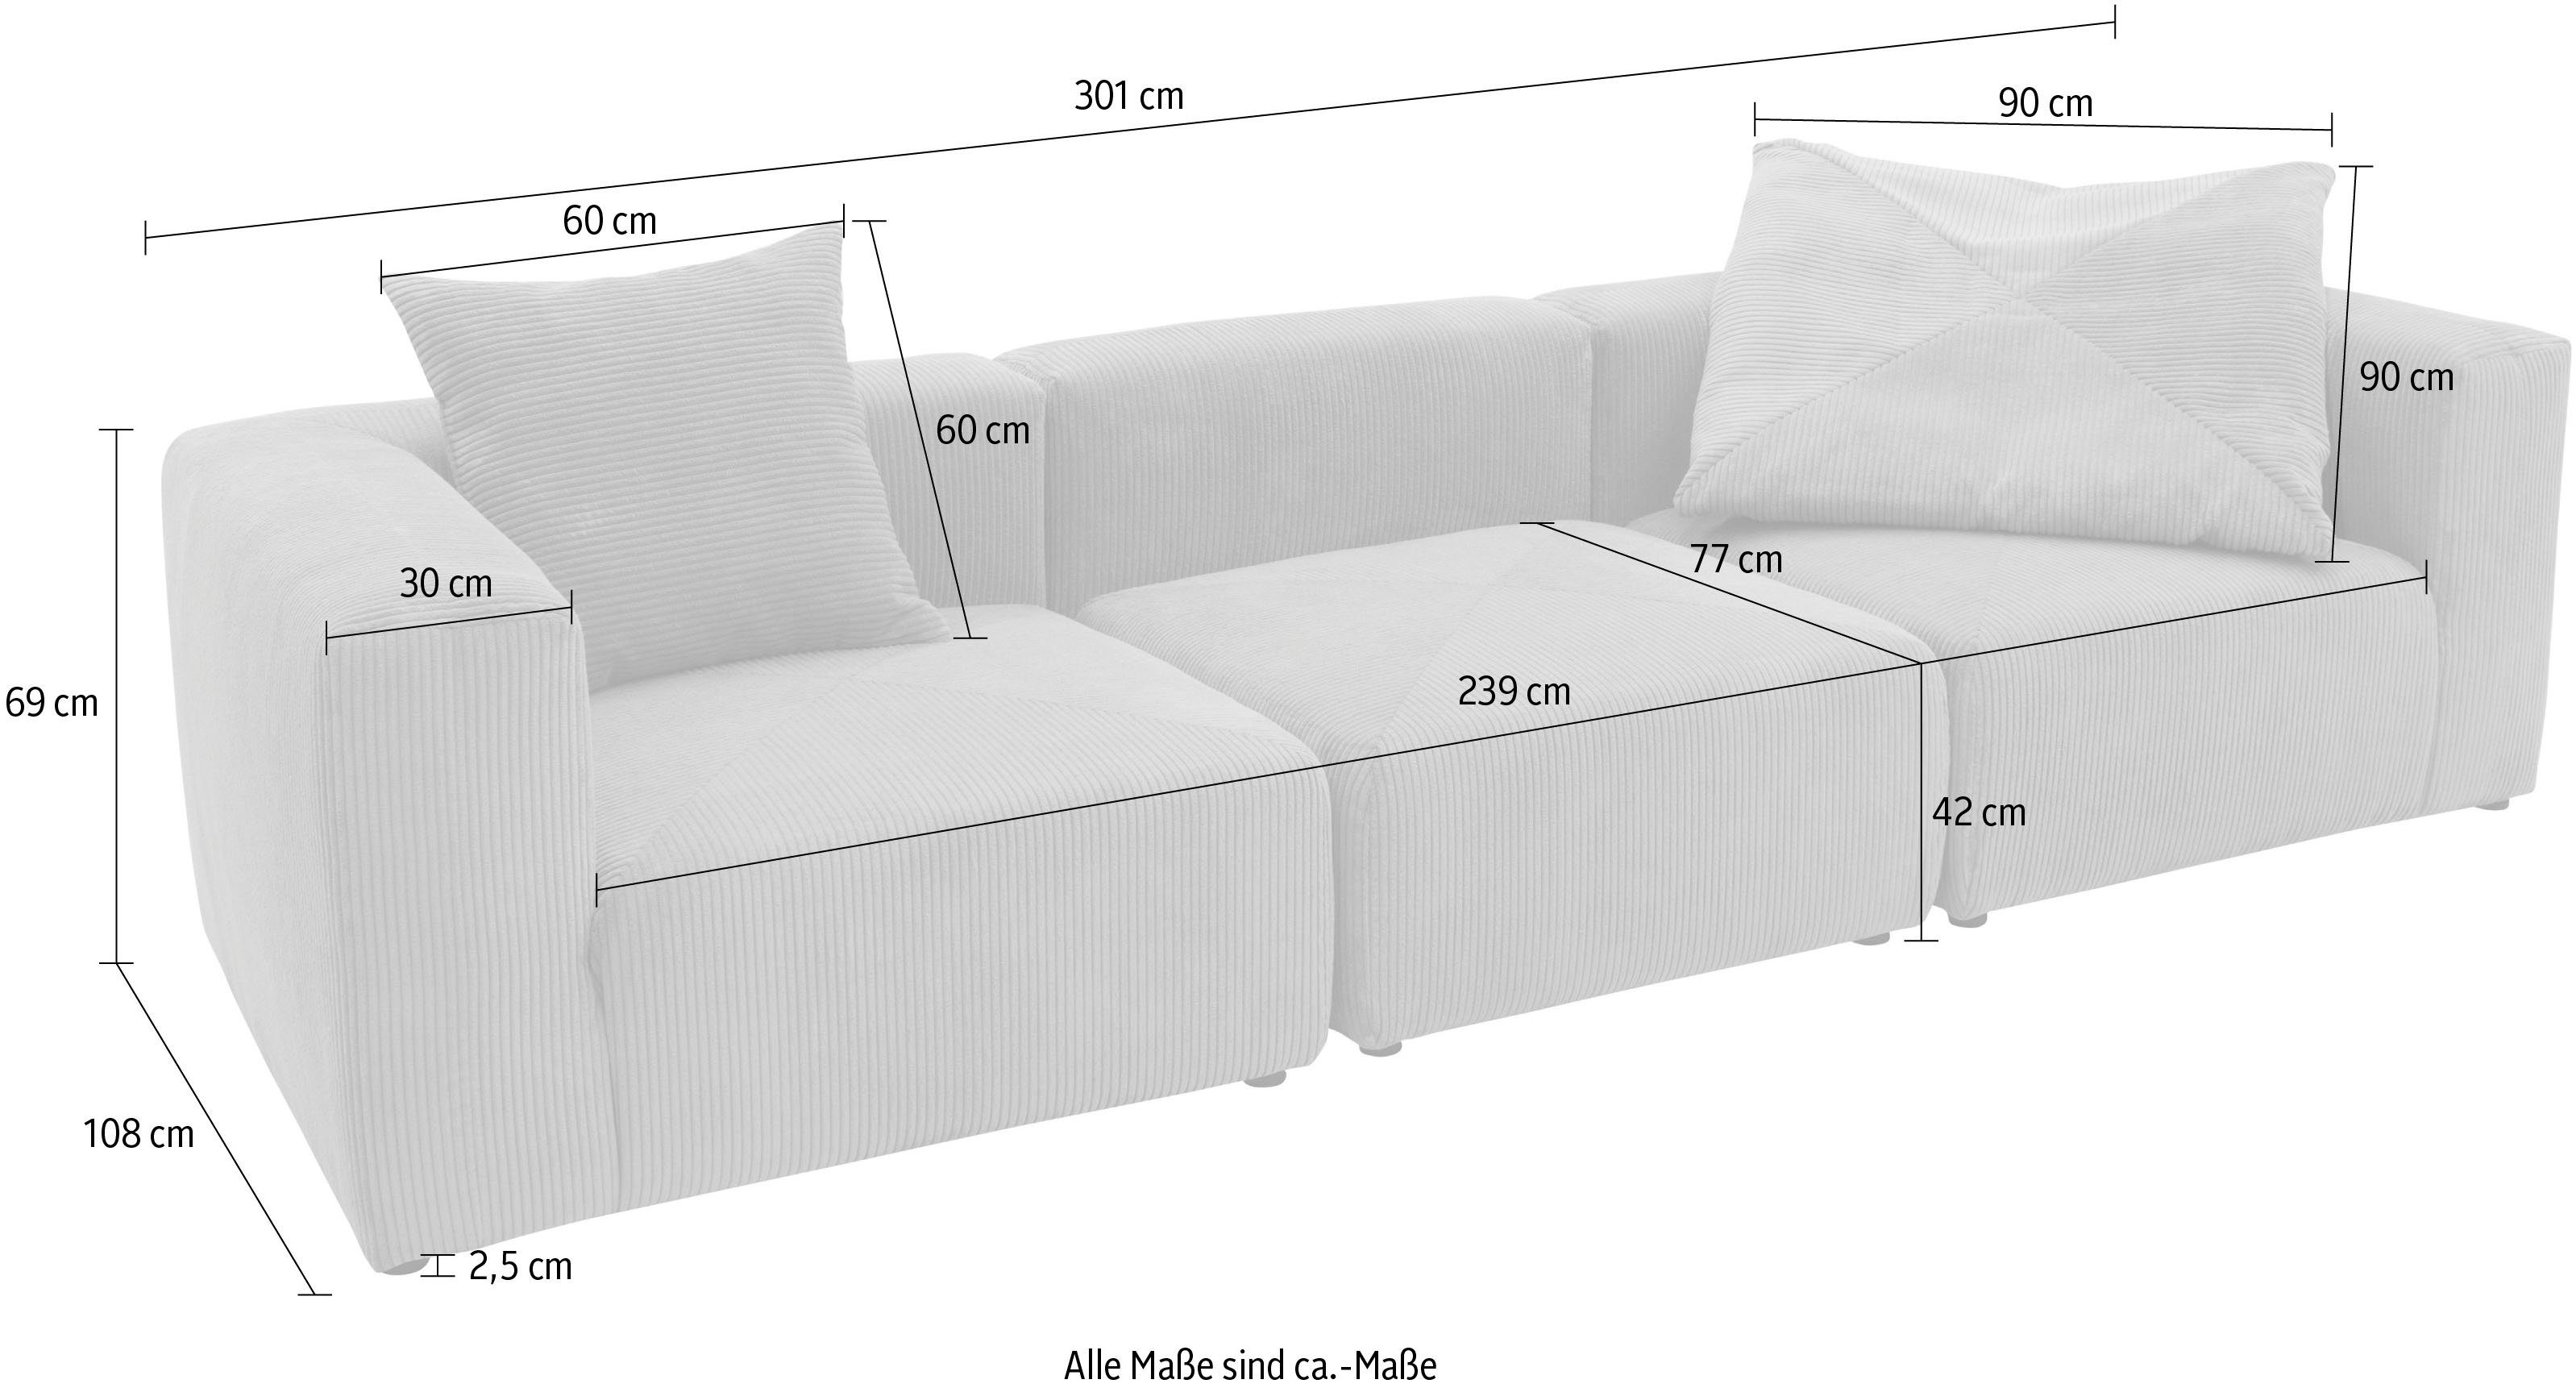 Mittelelement rose Eck- aus Gerrid, und RAUM.ID ein Cord-Bezug, bestehend Modulen: 2 Big-Sofa